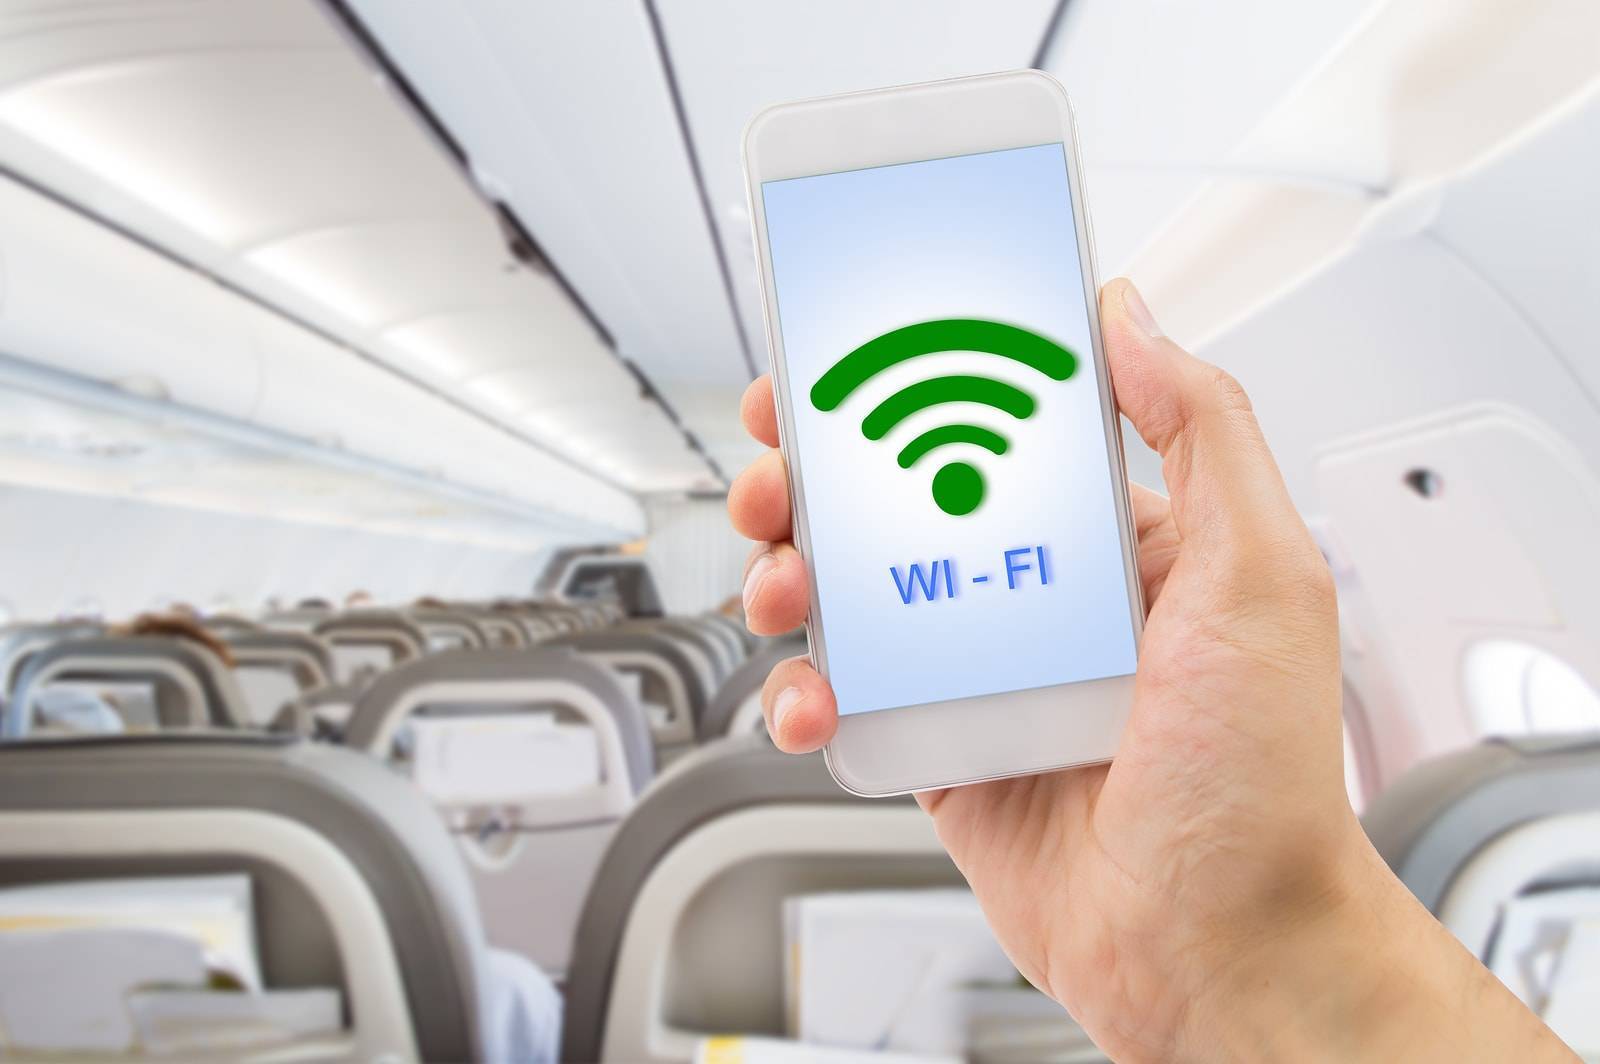 Интернет на борту «аэрофлота»: стоимость и условия использования wifi